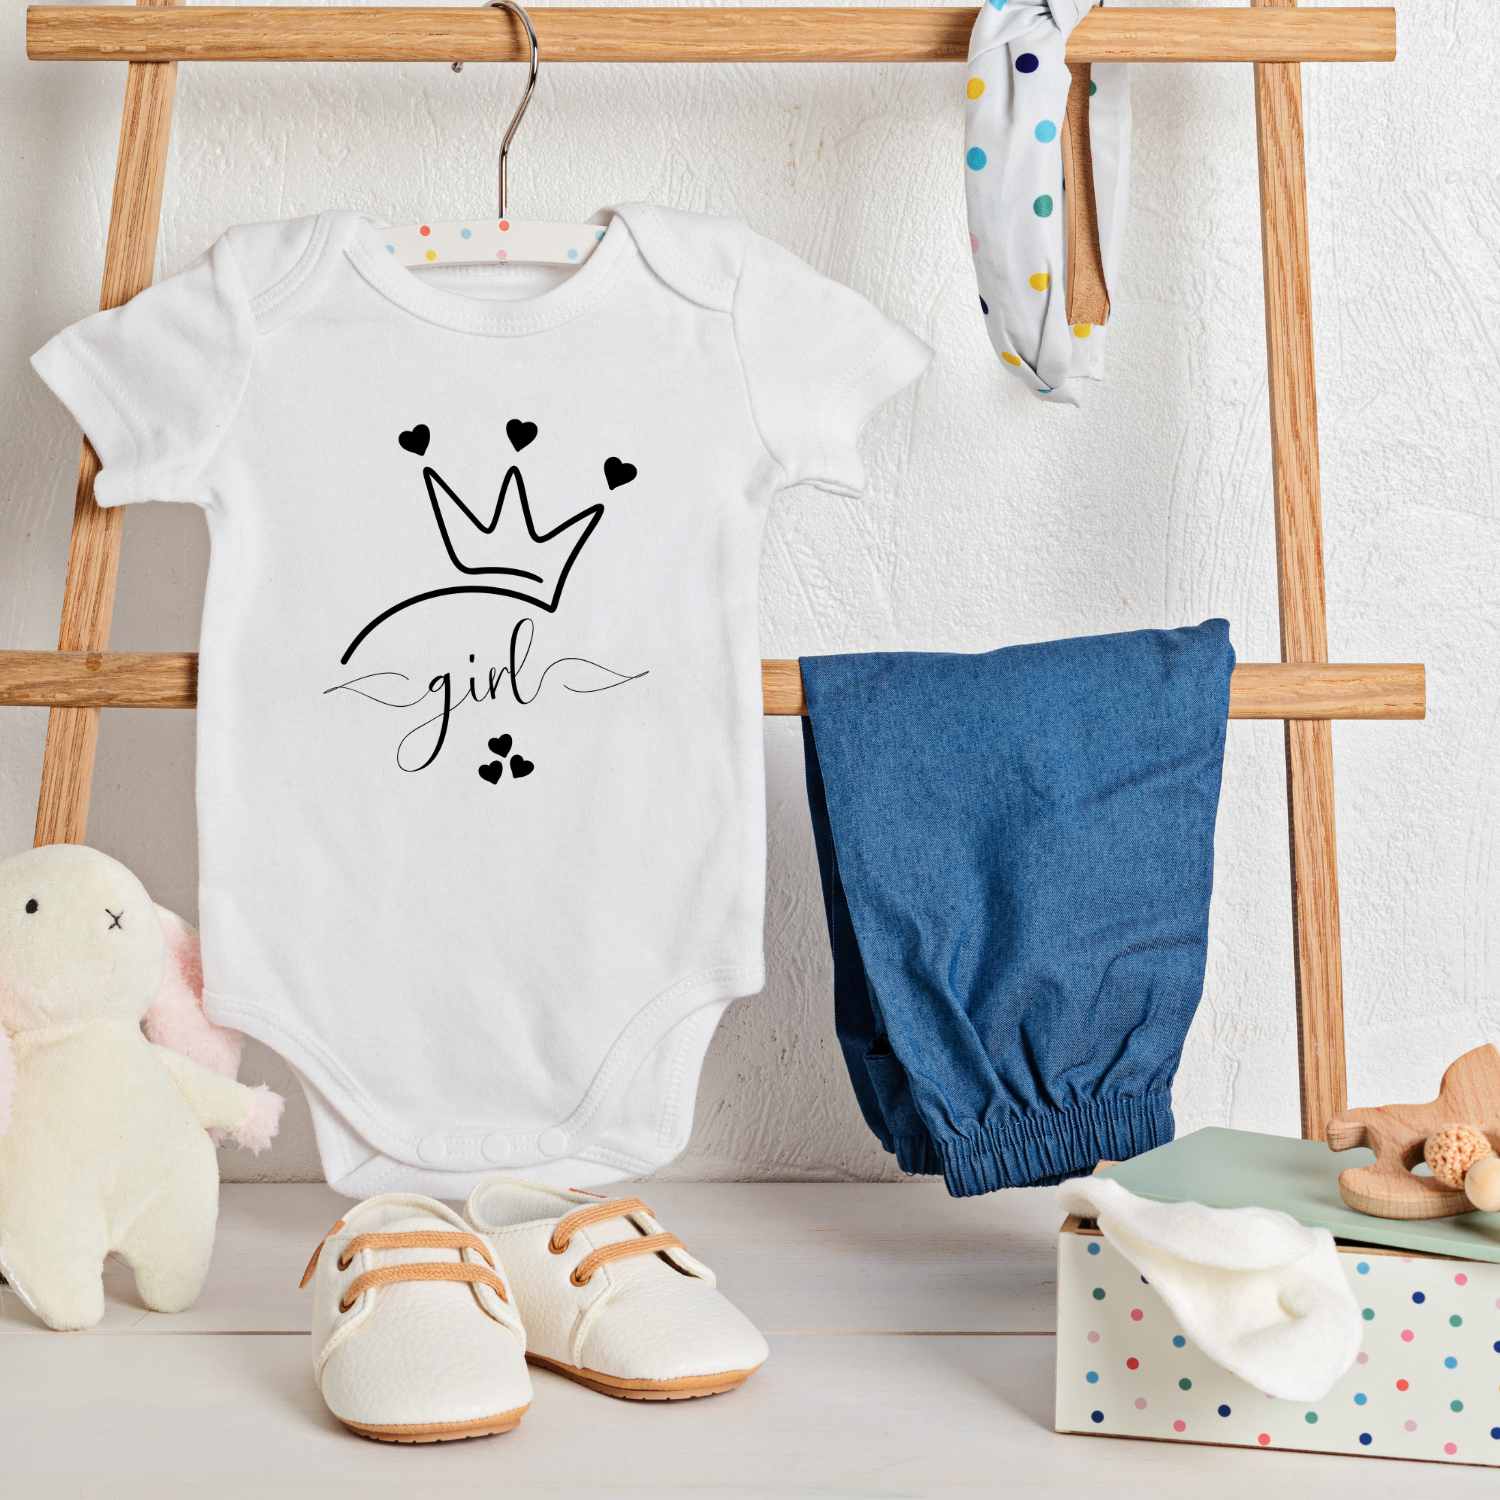 Simple Cute little Girl T-shirt Design